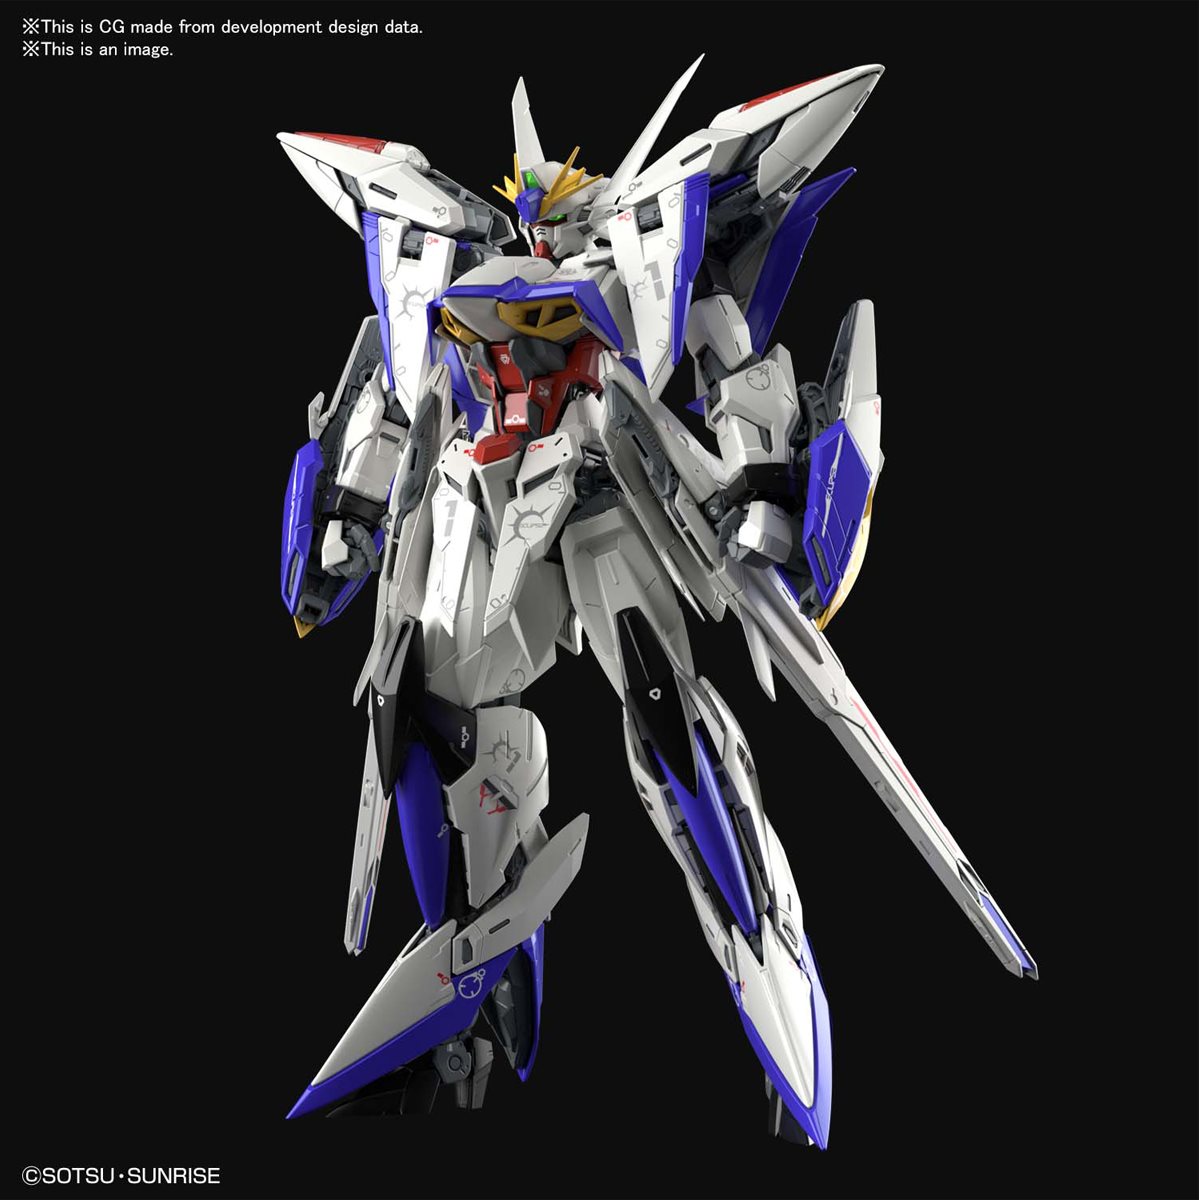 Eclipse Gundam Model Kit 1/100 Scale MG Gundam Seed MVF-X08 Bandai Hobby USA 